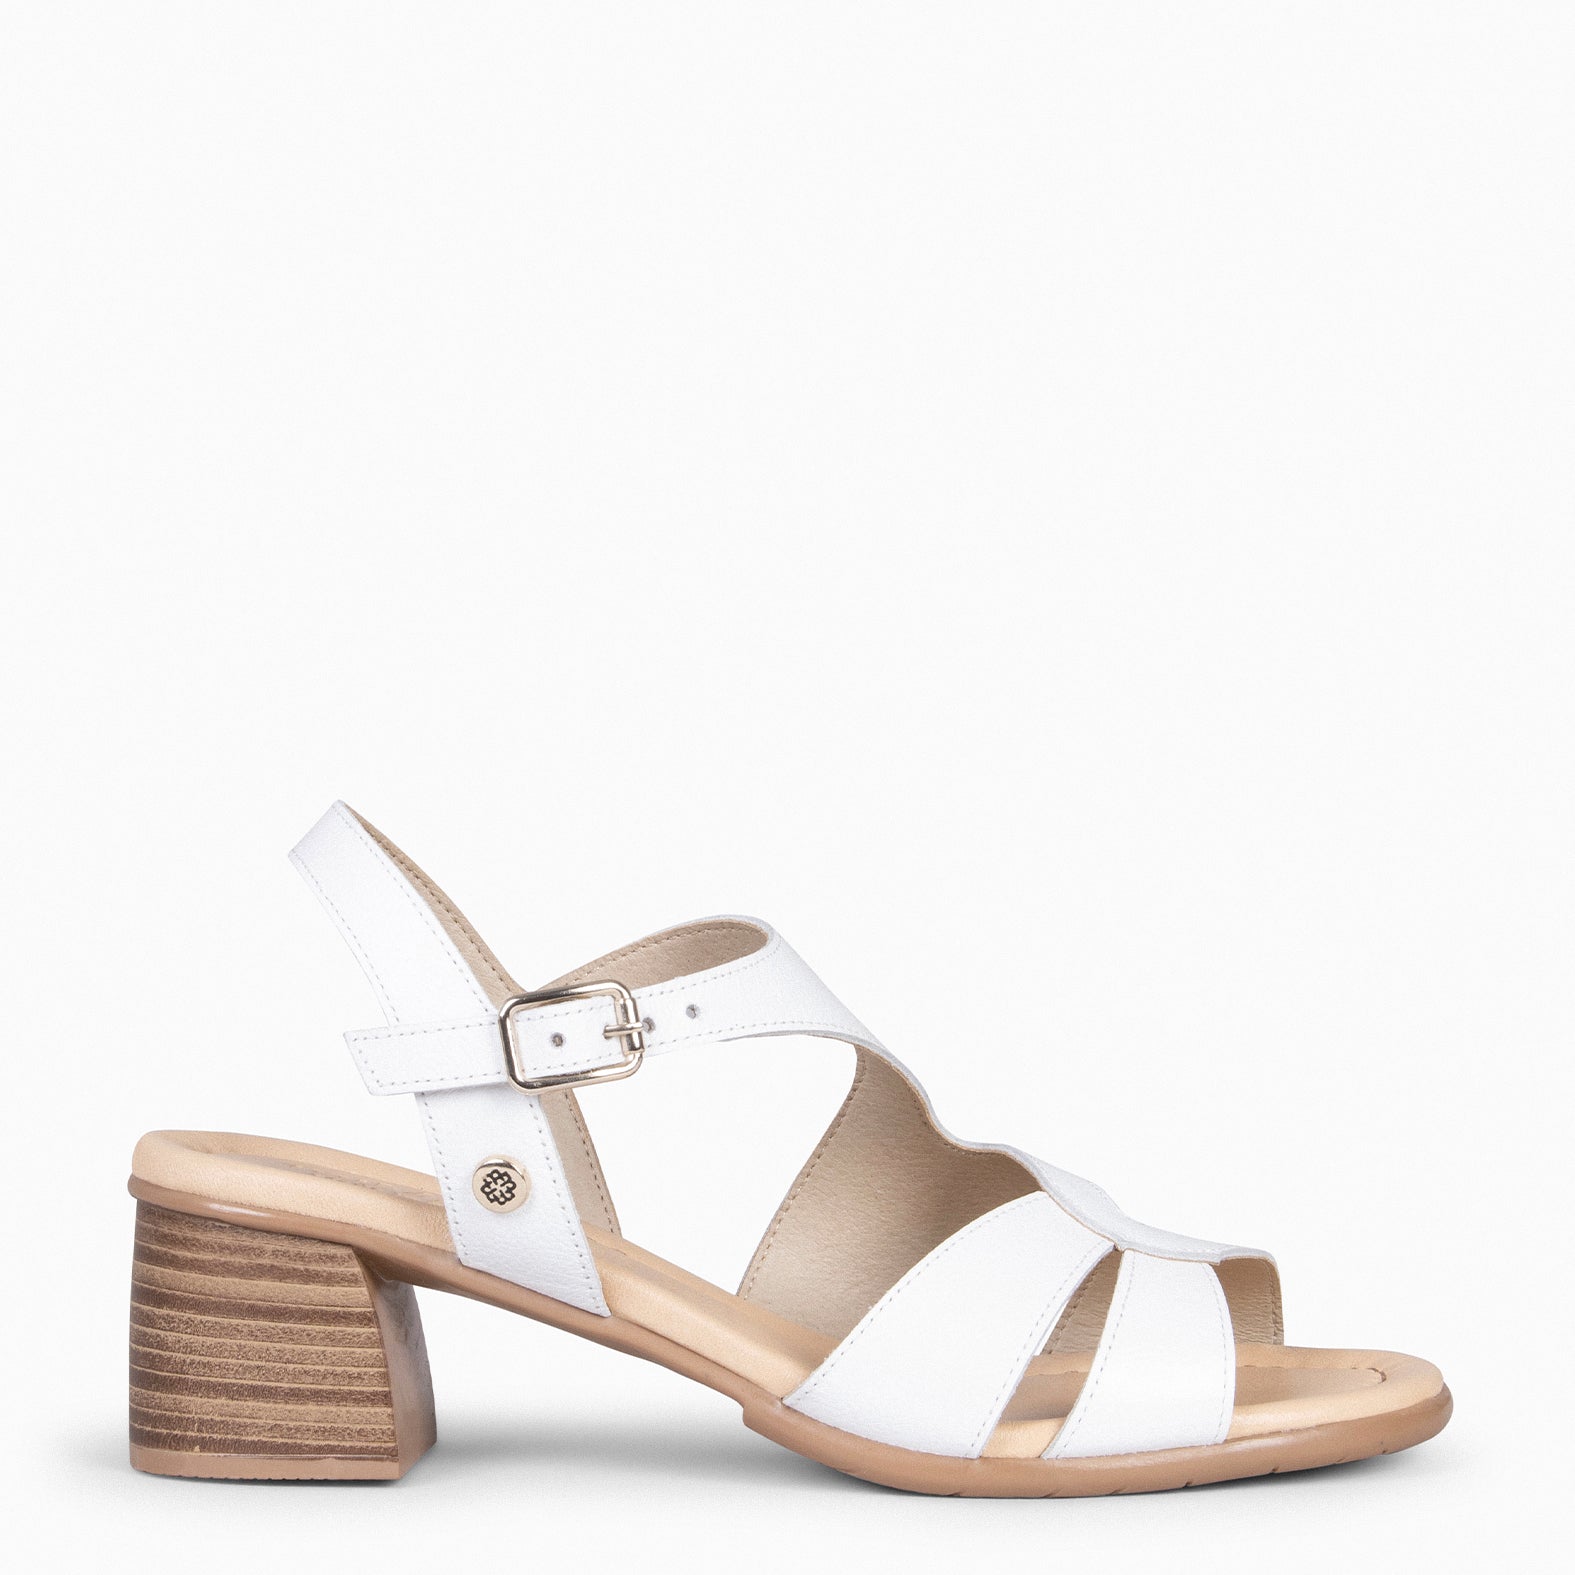 ESTRELLA – WHITE wide-heeled sandals